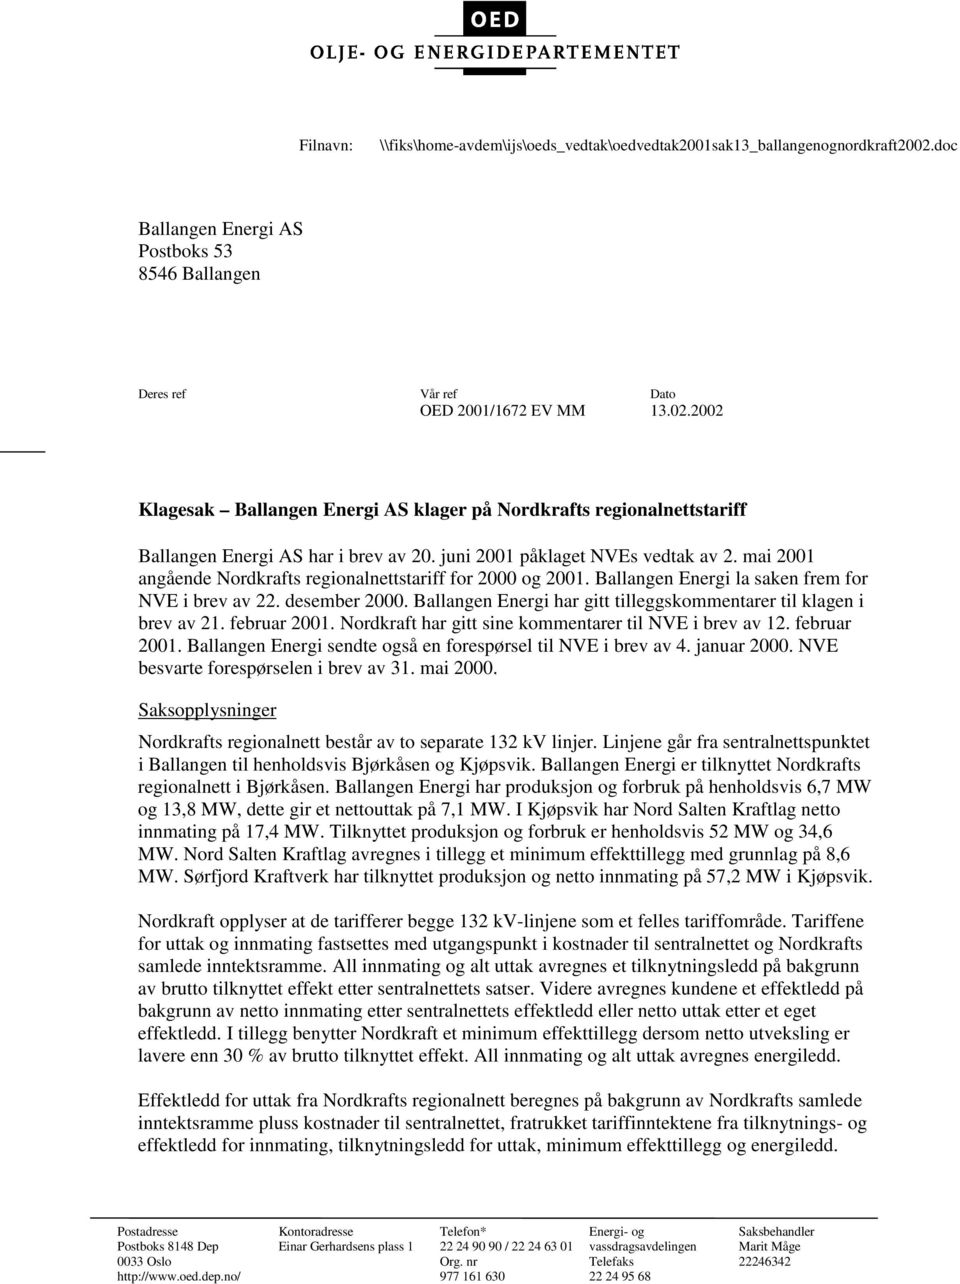 Ballangen Energi har gitt tilleggskommentarer til klagen i brev av 21. februar 2001. Nordkraft har gitt sine kommentarer til NVE i brev av 12. februar 2001. Ballangen Energi sendte også en forespørsel til NVE i brev av 4.